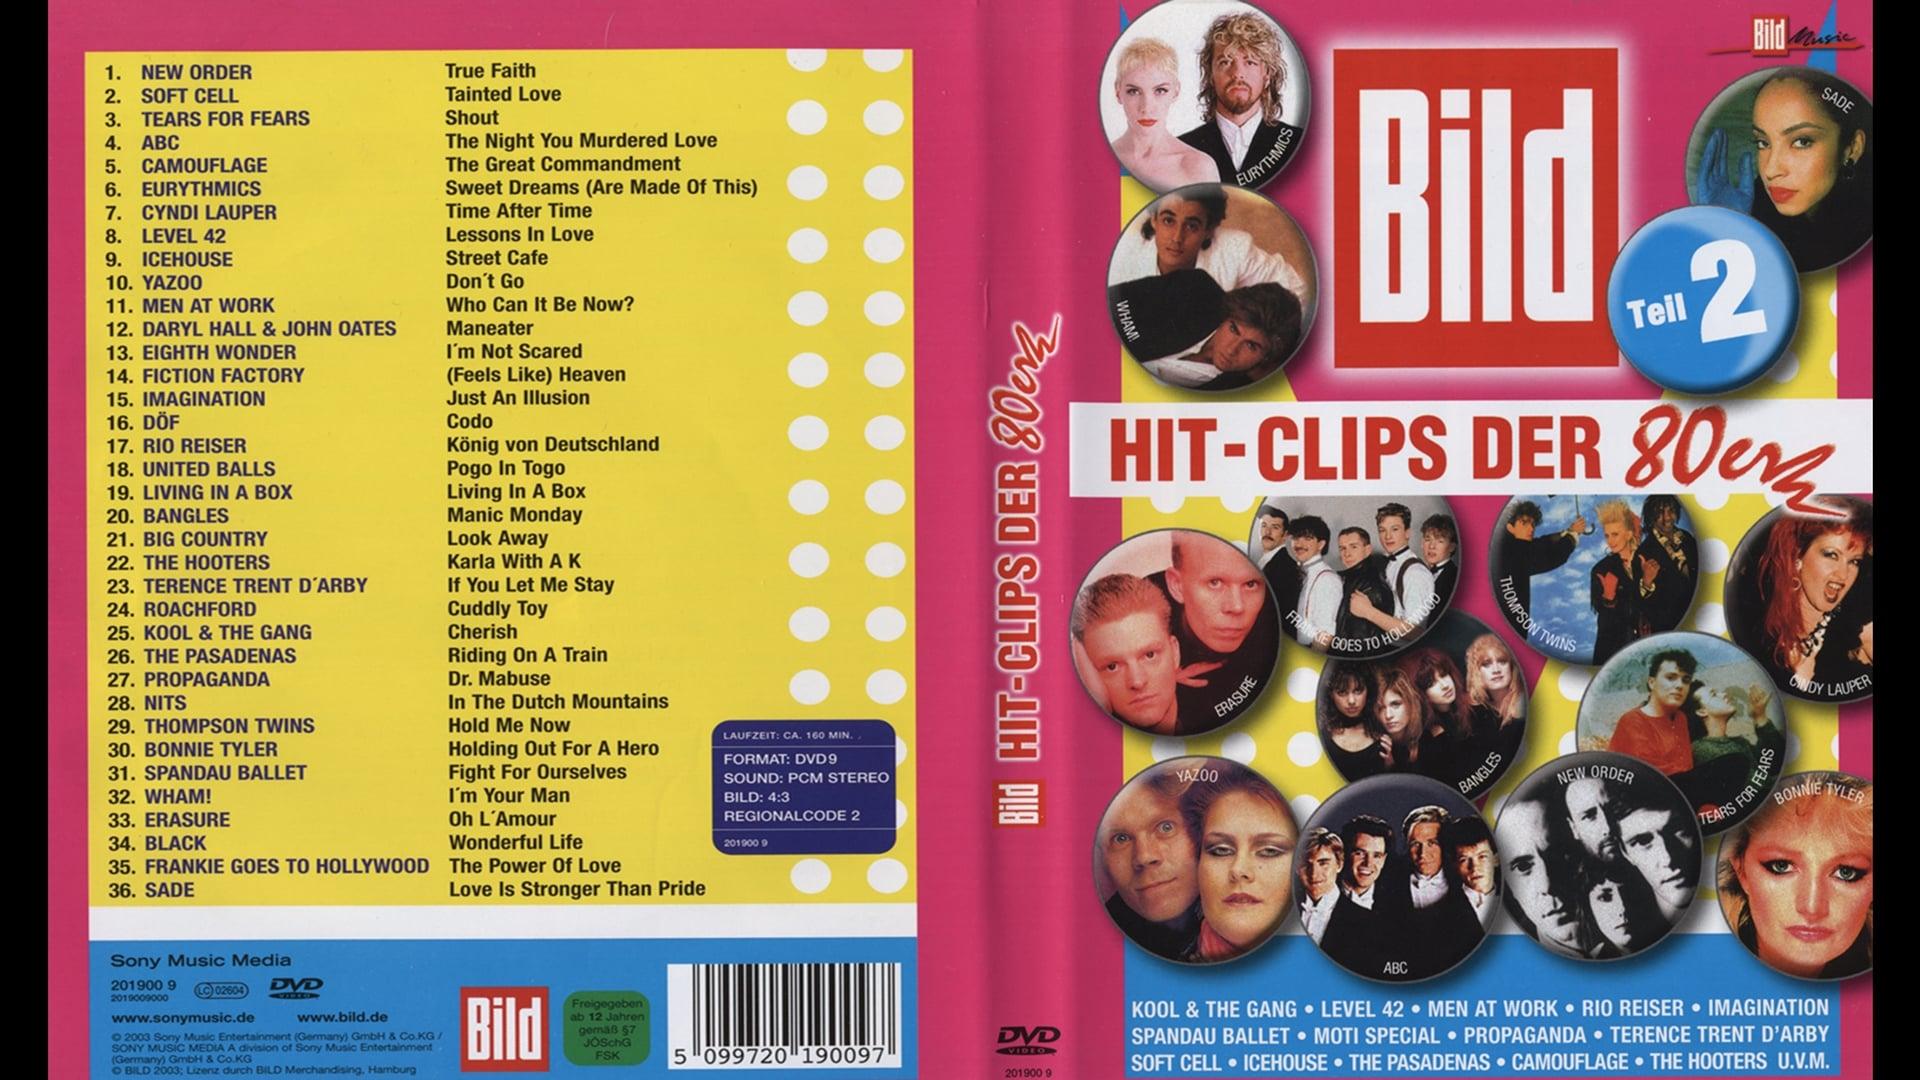 Bild: Hit - Clips Der 80er - Tell 2 backdrop